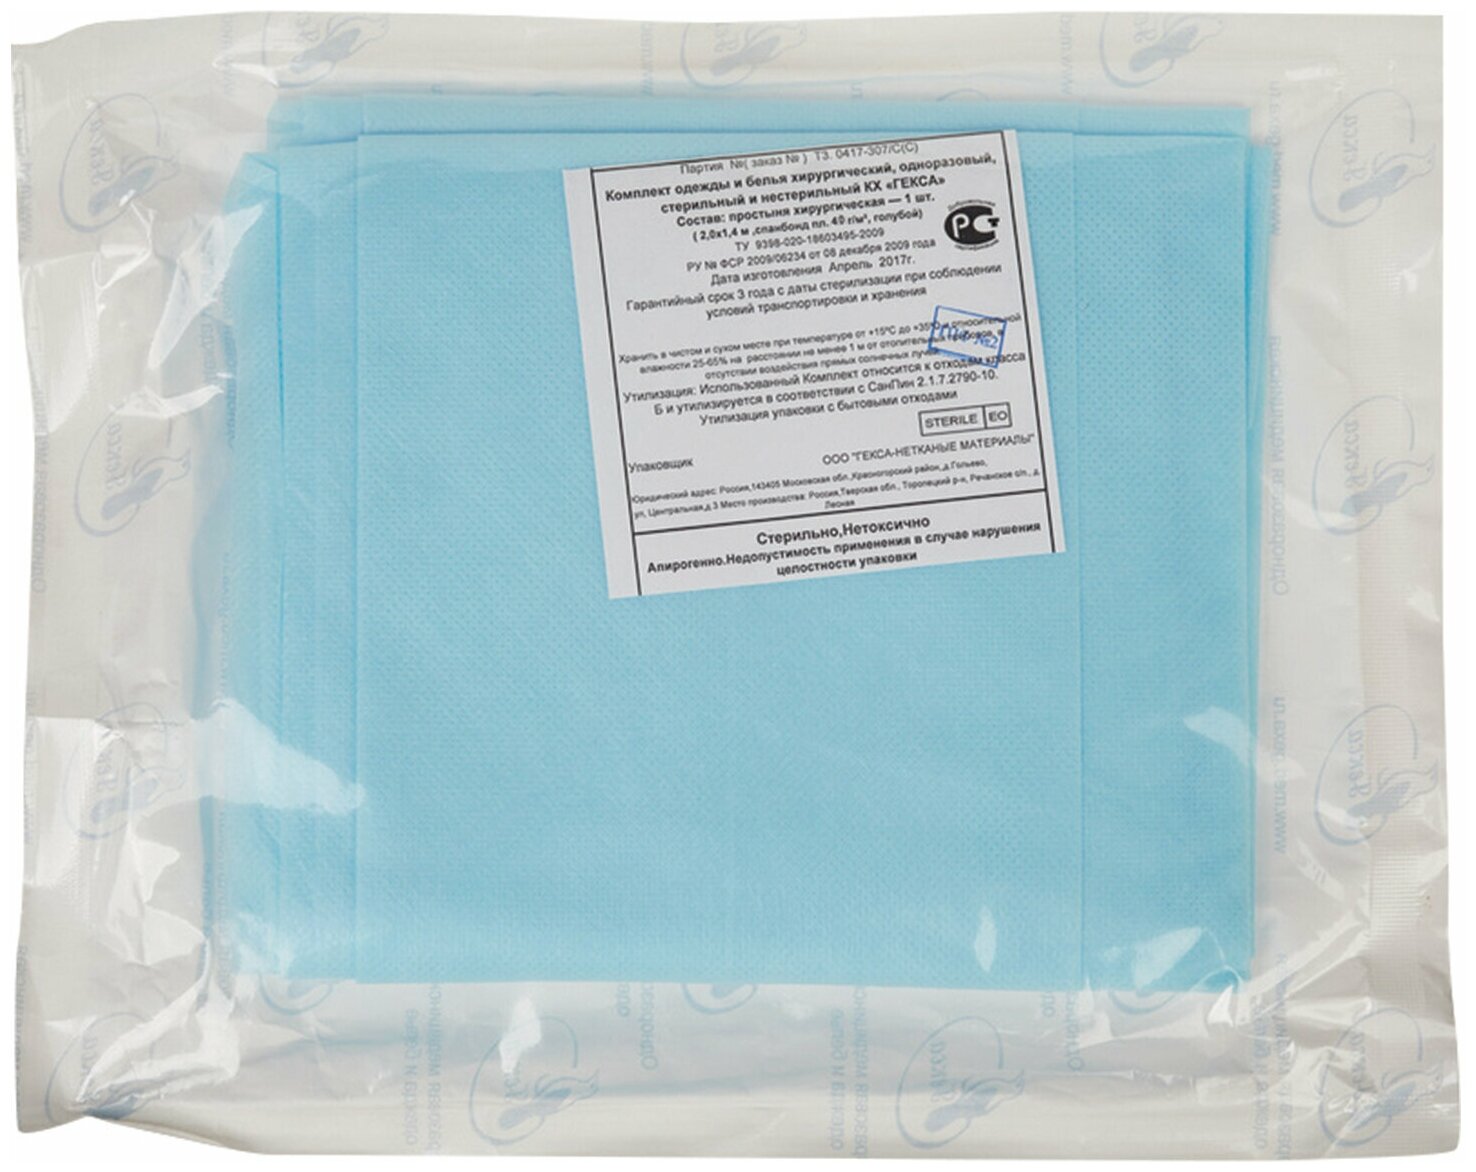 Простыня голубая стерильная 140×200 см, ламинированный спанбонд 40 г/м2, гекса /Квант продажи 3 ед./